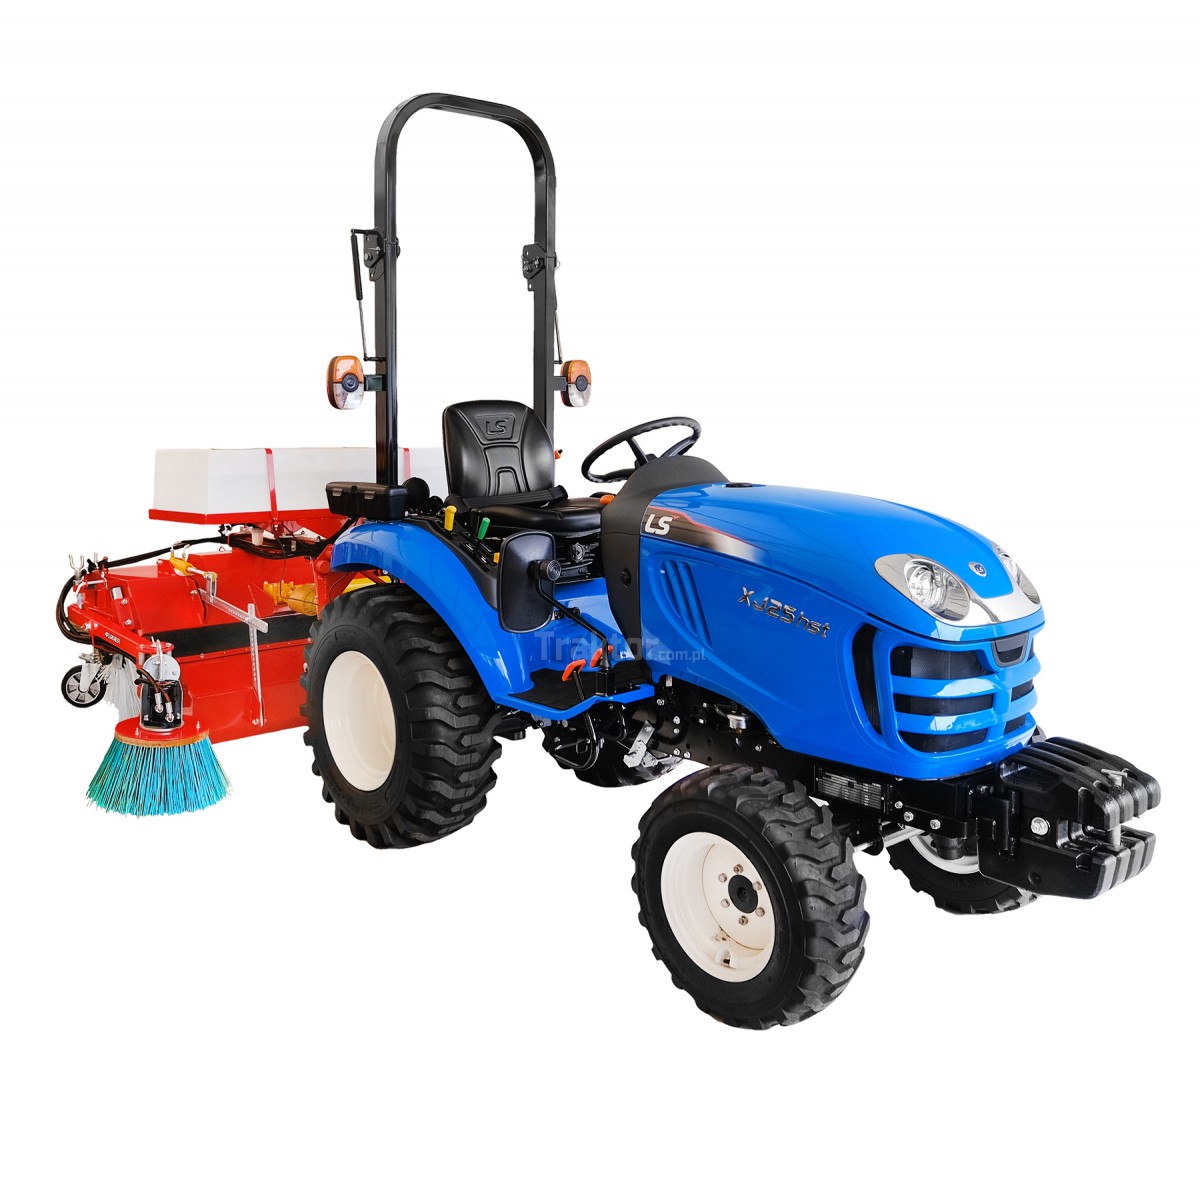 LS Traktor XJ25 HST 4x4 - 24,4 PS / IND + 120 cm Kehrmaschine mit Korb, Bewässerungsbehälter und Seitenbürste 4FARMER